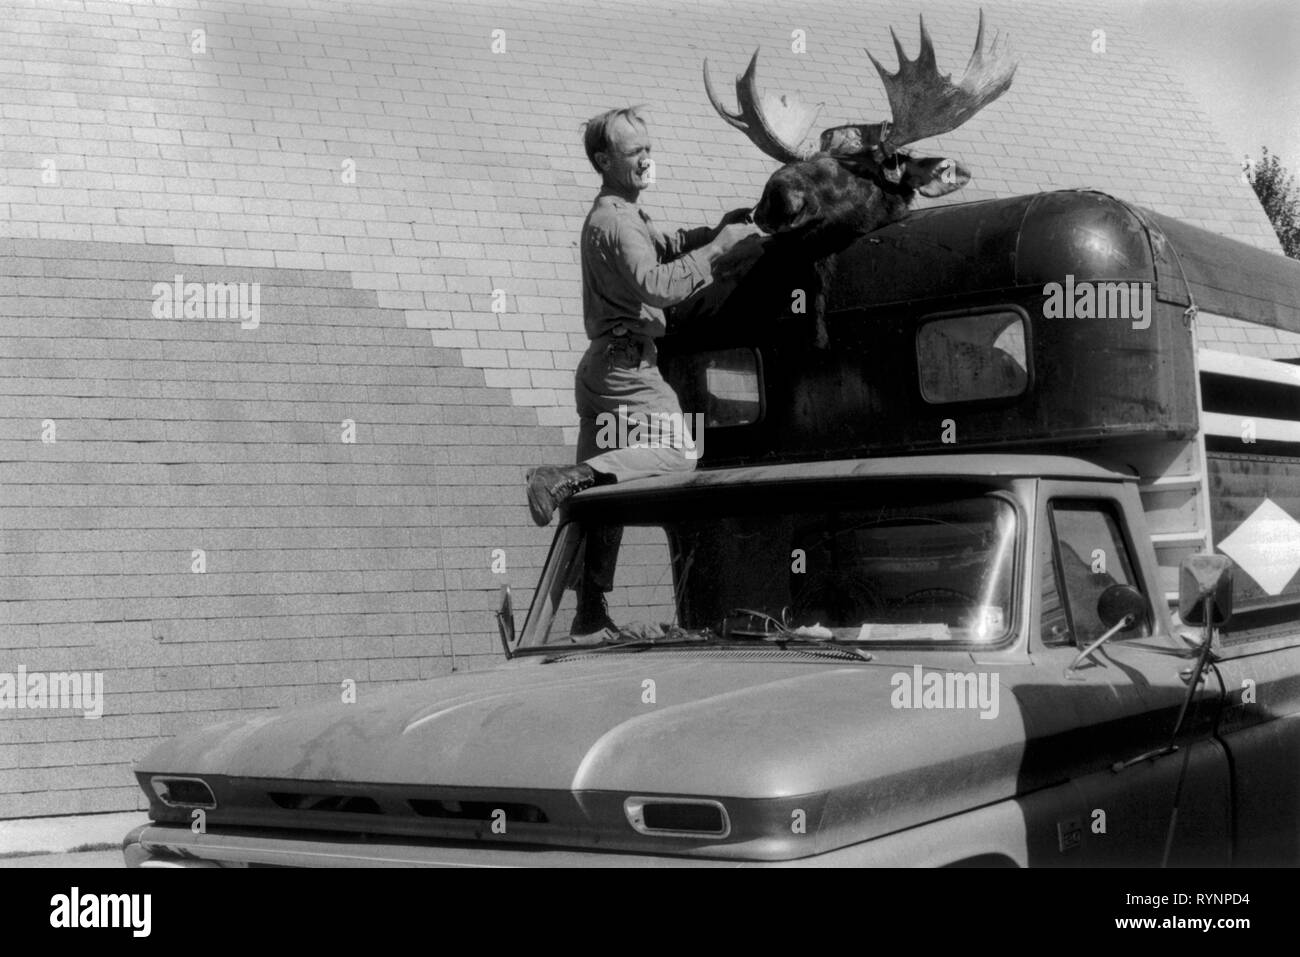 Trophée de chasse, tête de chasse d'une souris avec des bois. Un homme attache une tête de souris au sommet d'une boîte à chevaux. La tête montée semble attachée au cheval qui est visible dans la boîte à cheval. 1971 US Evanston Wyoming USA 1970s. HOMER SYKES Banque D'Images